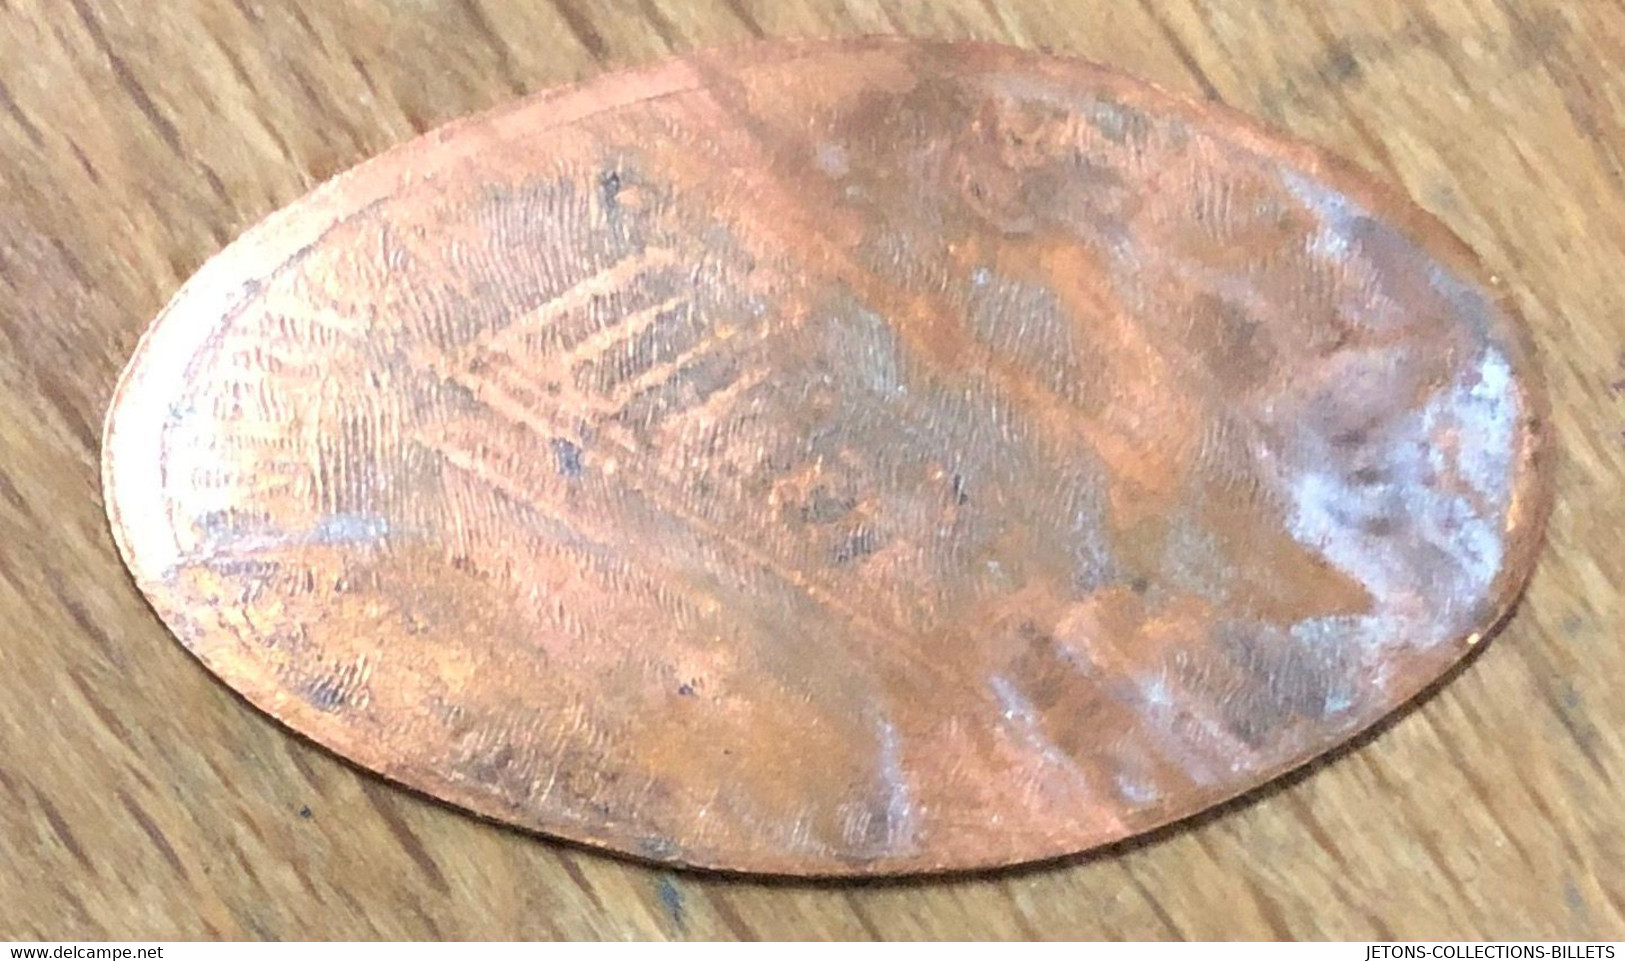 ÉTATS-UNIS USA MILWAUKEE COUNTY ZOO LÉMURIEN PIÈCE ÉCRASÉE PENNY ELONGATED COIN MEDAILLE TOURISTIQUE MEDALS TOKENS - Souvenirmunten (elongated Coins)